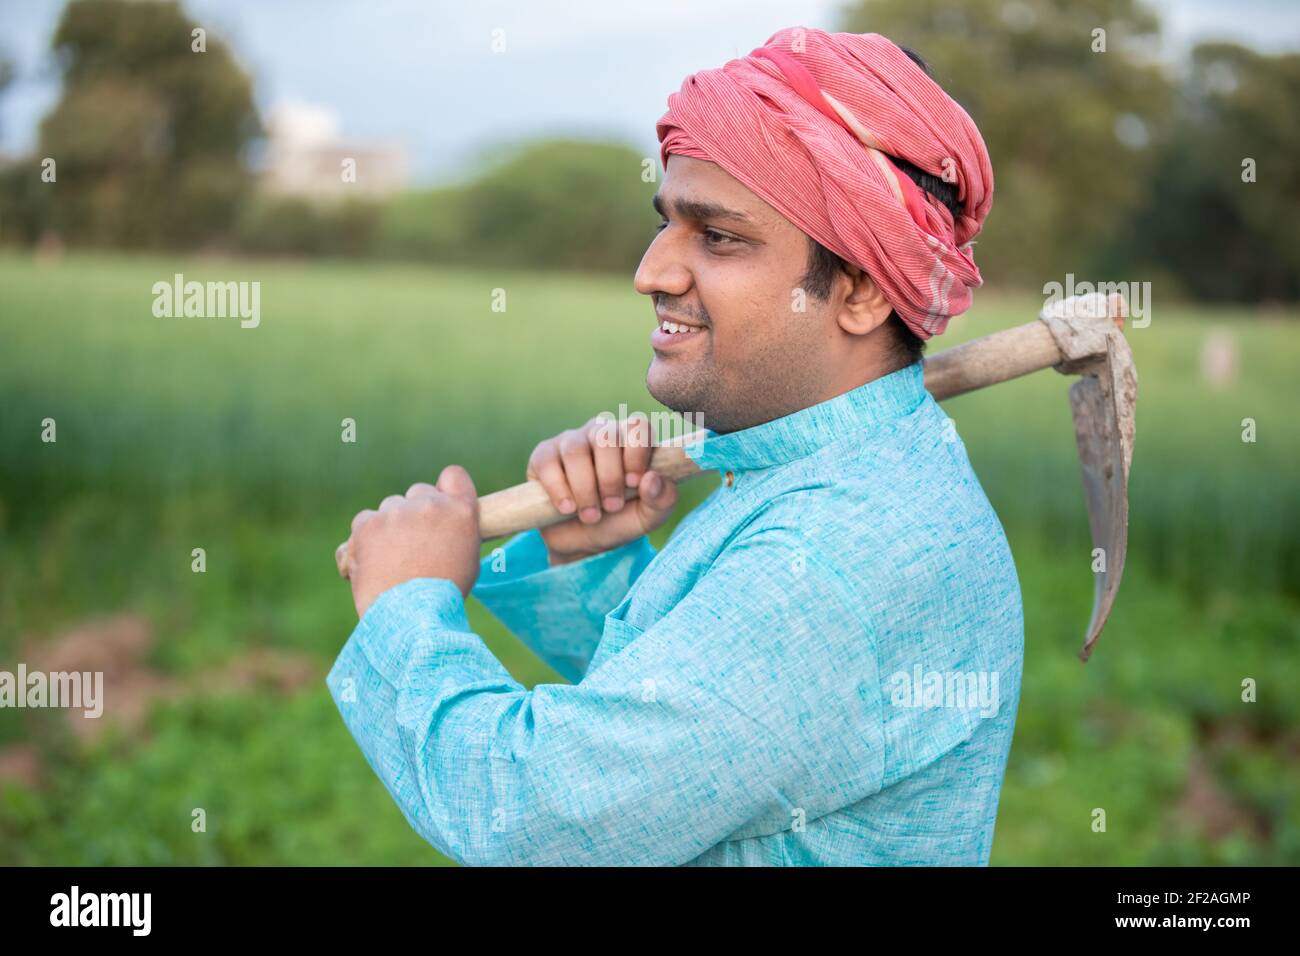 Portrait von glücklichen indischen männlichen Landwirt Arbeiter hält Pfand Garten Spade / Schaufel oder landwirtschaftliche Werkzeug. Stockfoto